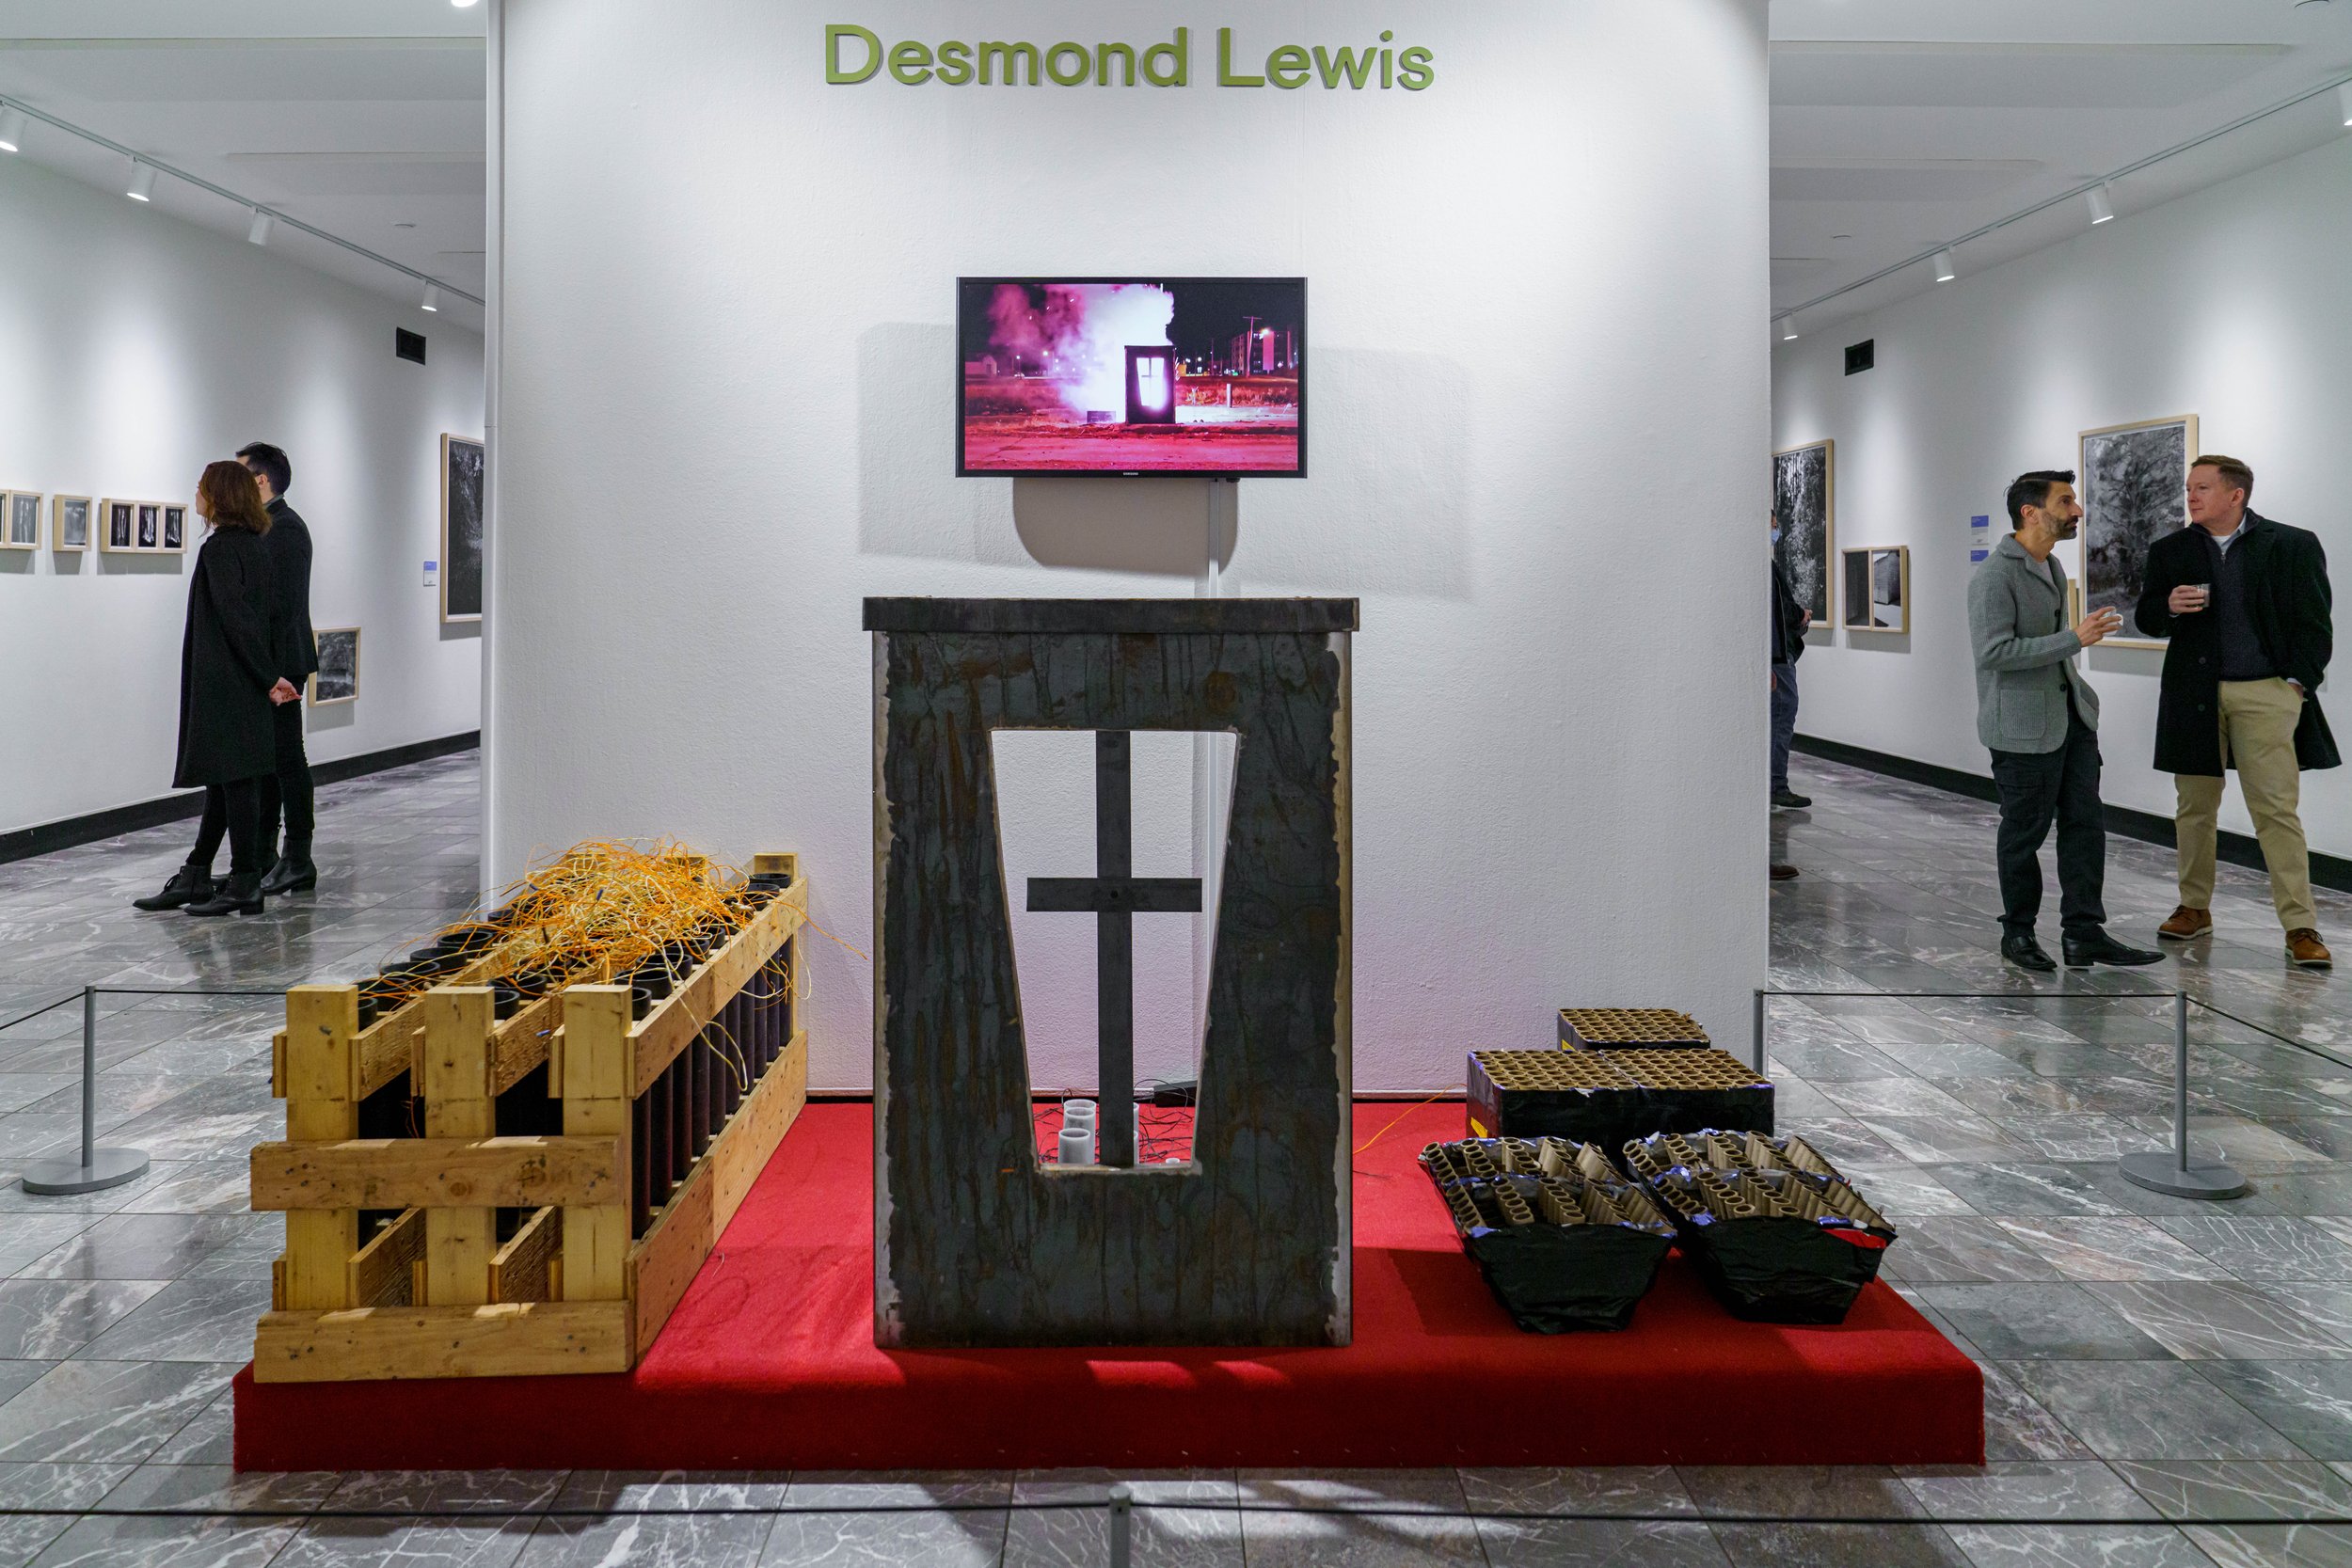 Desmond Lewis